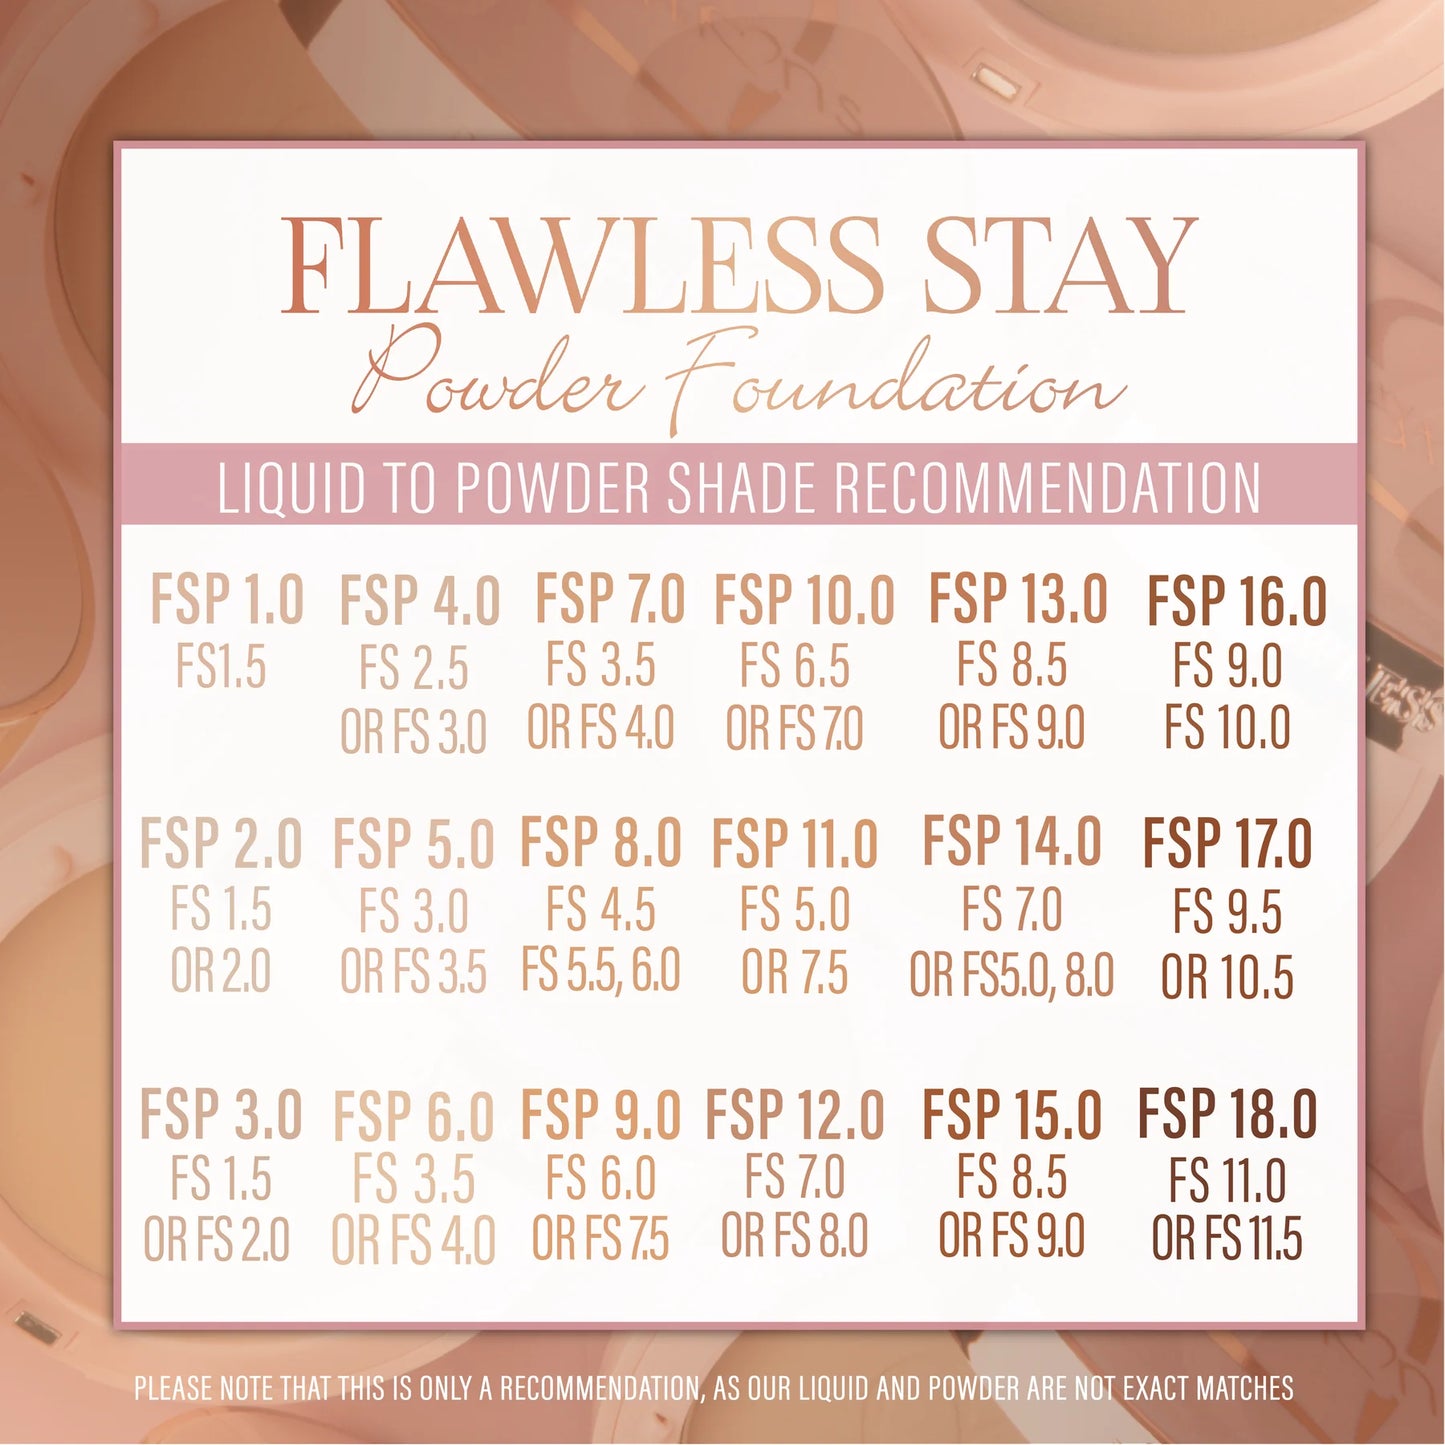 4.0 - Flawless Stay Powder Foundation